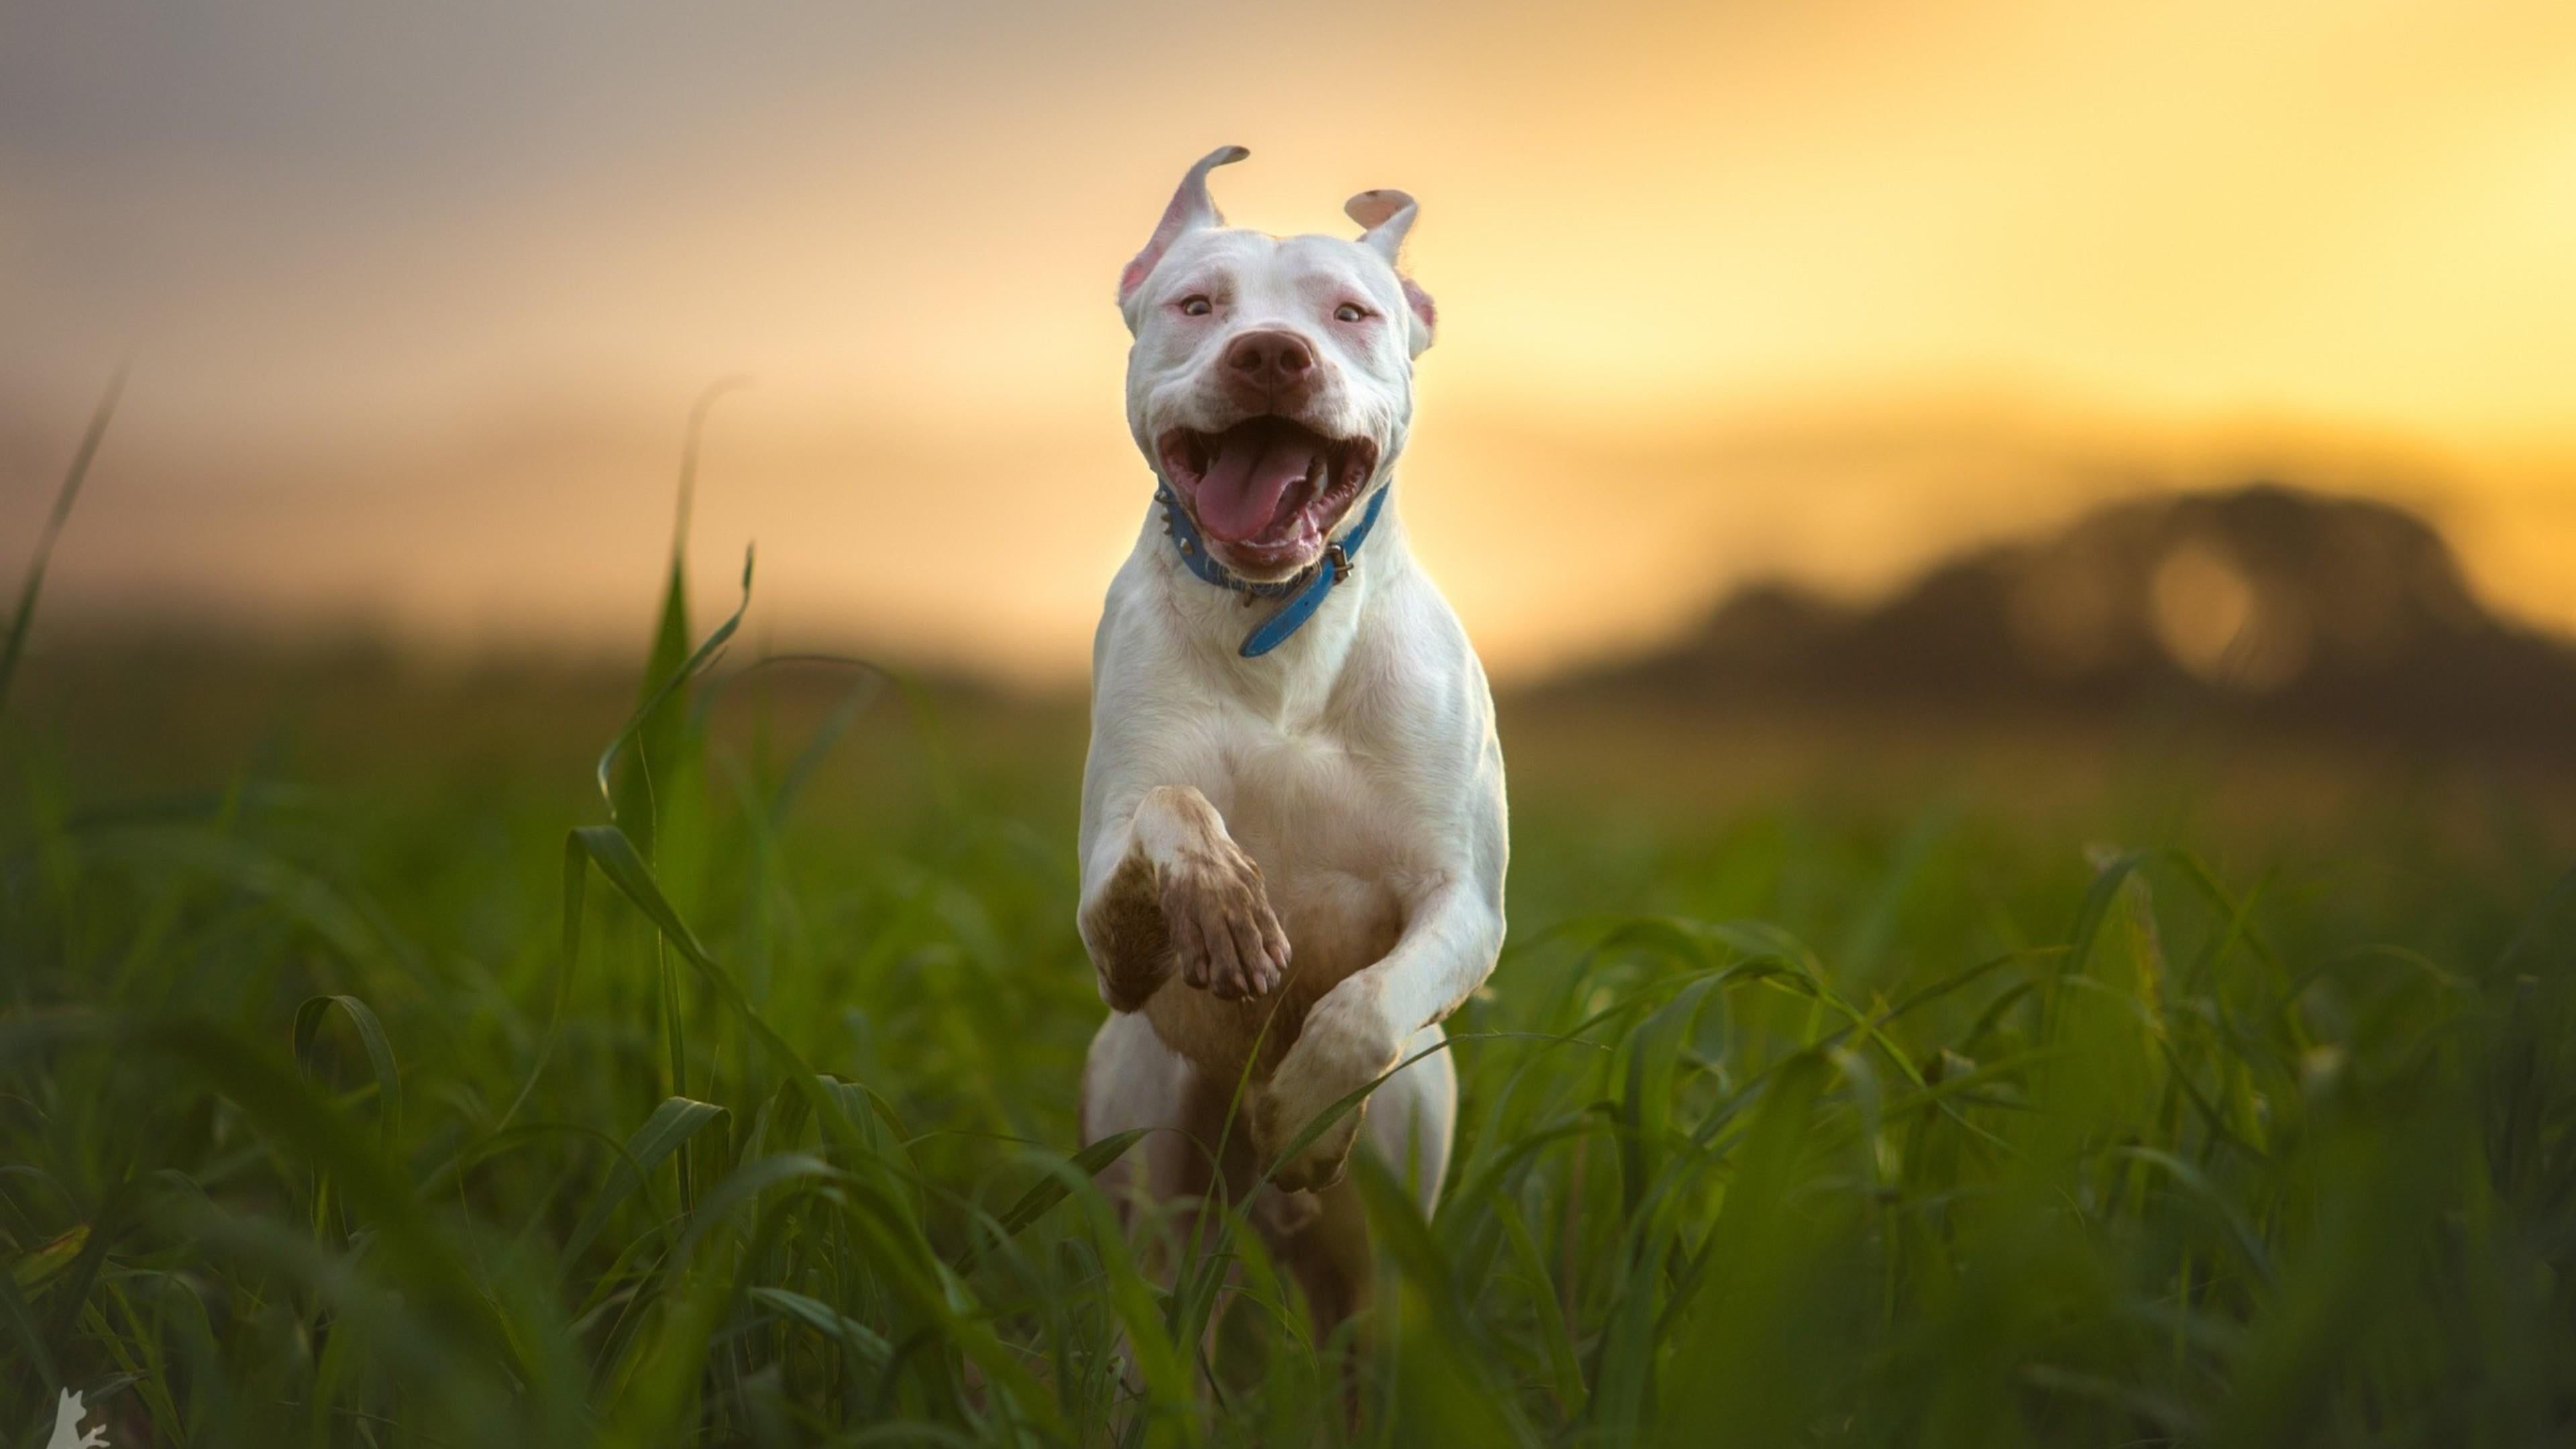 HD wallpaper: pitbull, dog, run, blurry, breed, canine, one animal, domestic. Pitbull dog breed, Pitbull dog, Pitbulls